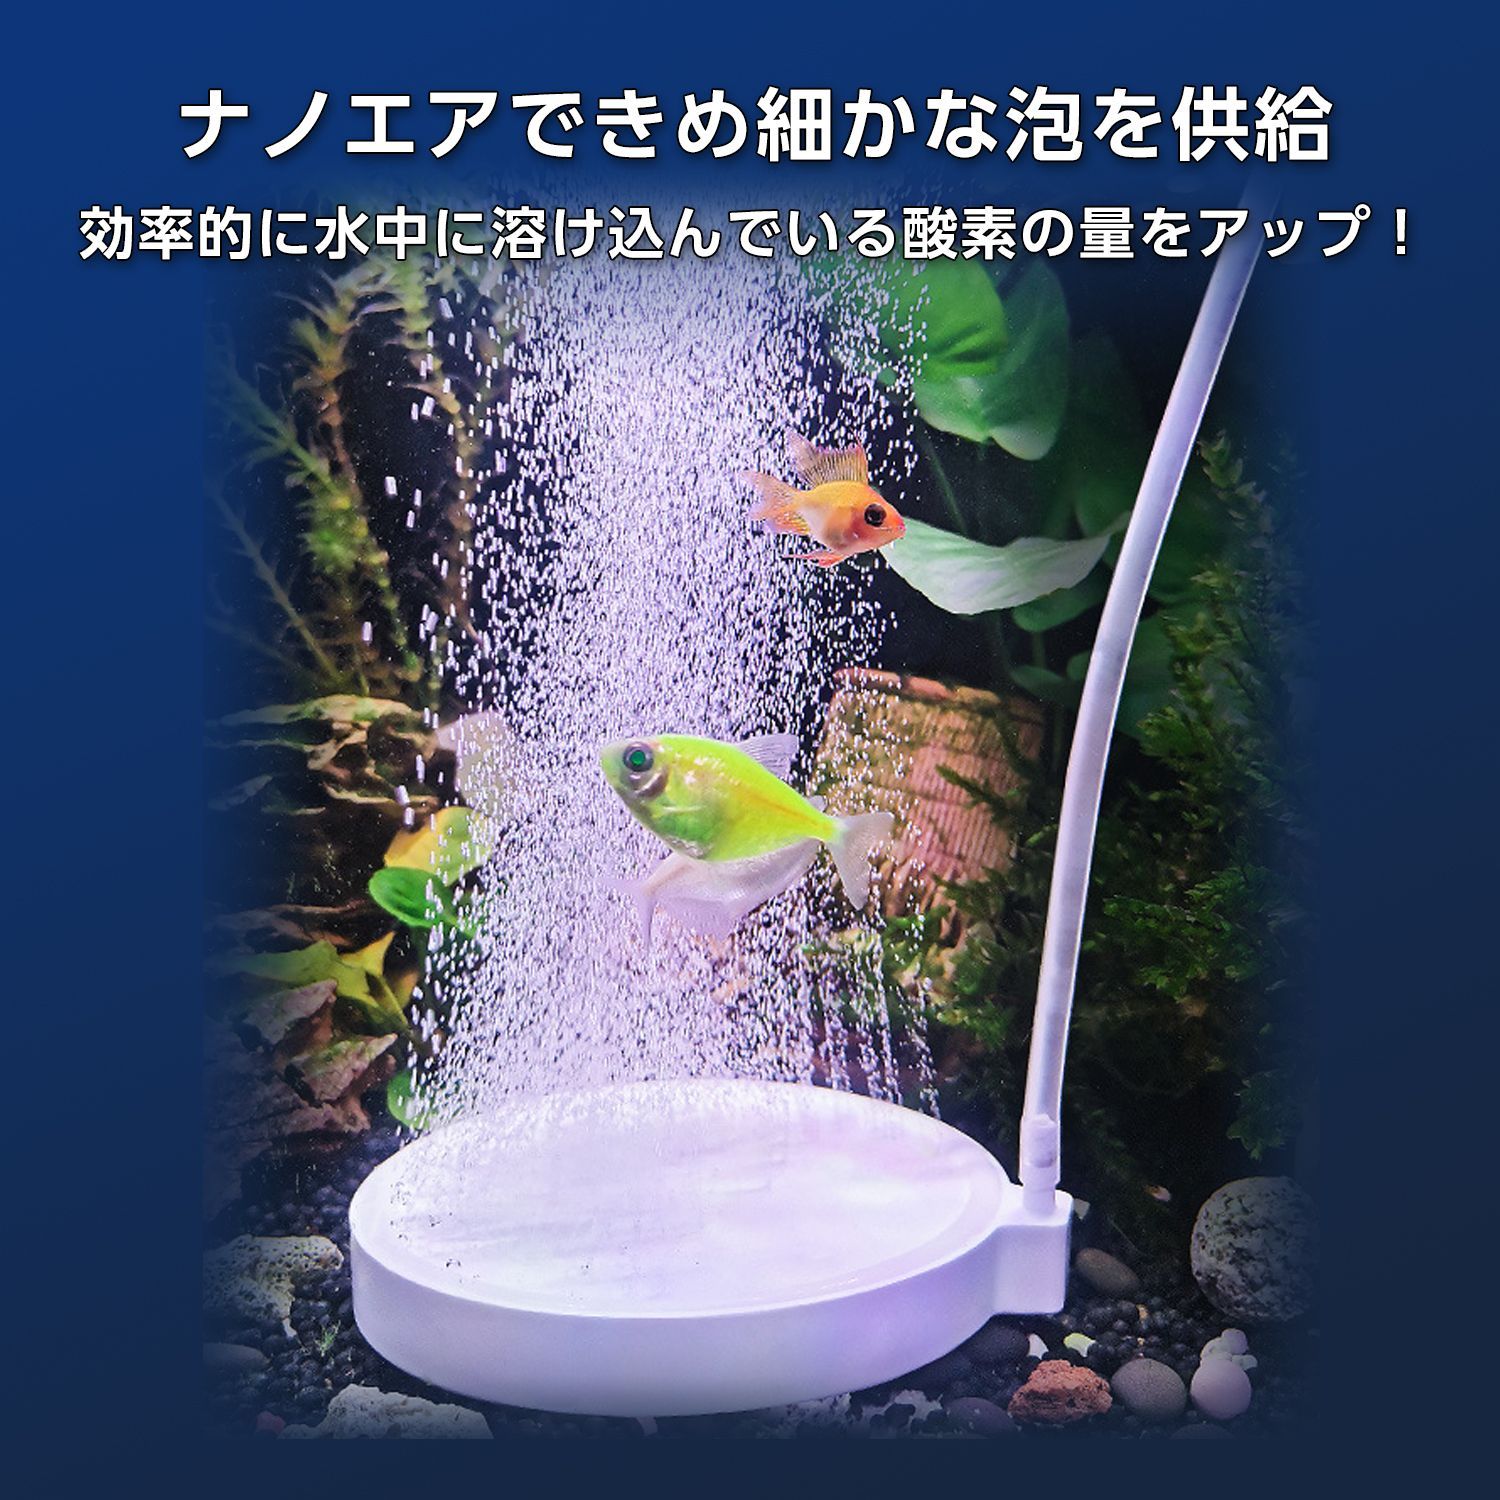 エアストーン 水槽空気石 エアーストーン水槽用 5cm(グレー×ホワイト